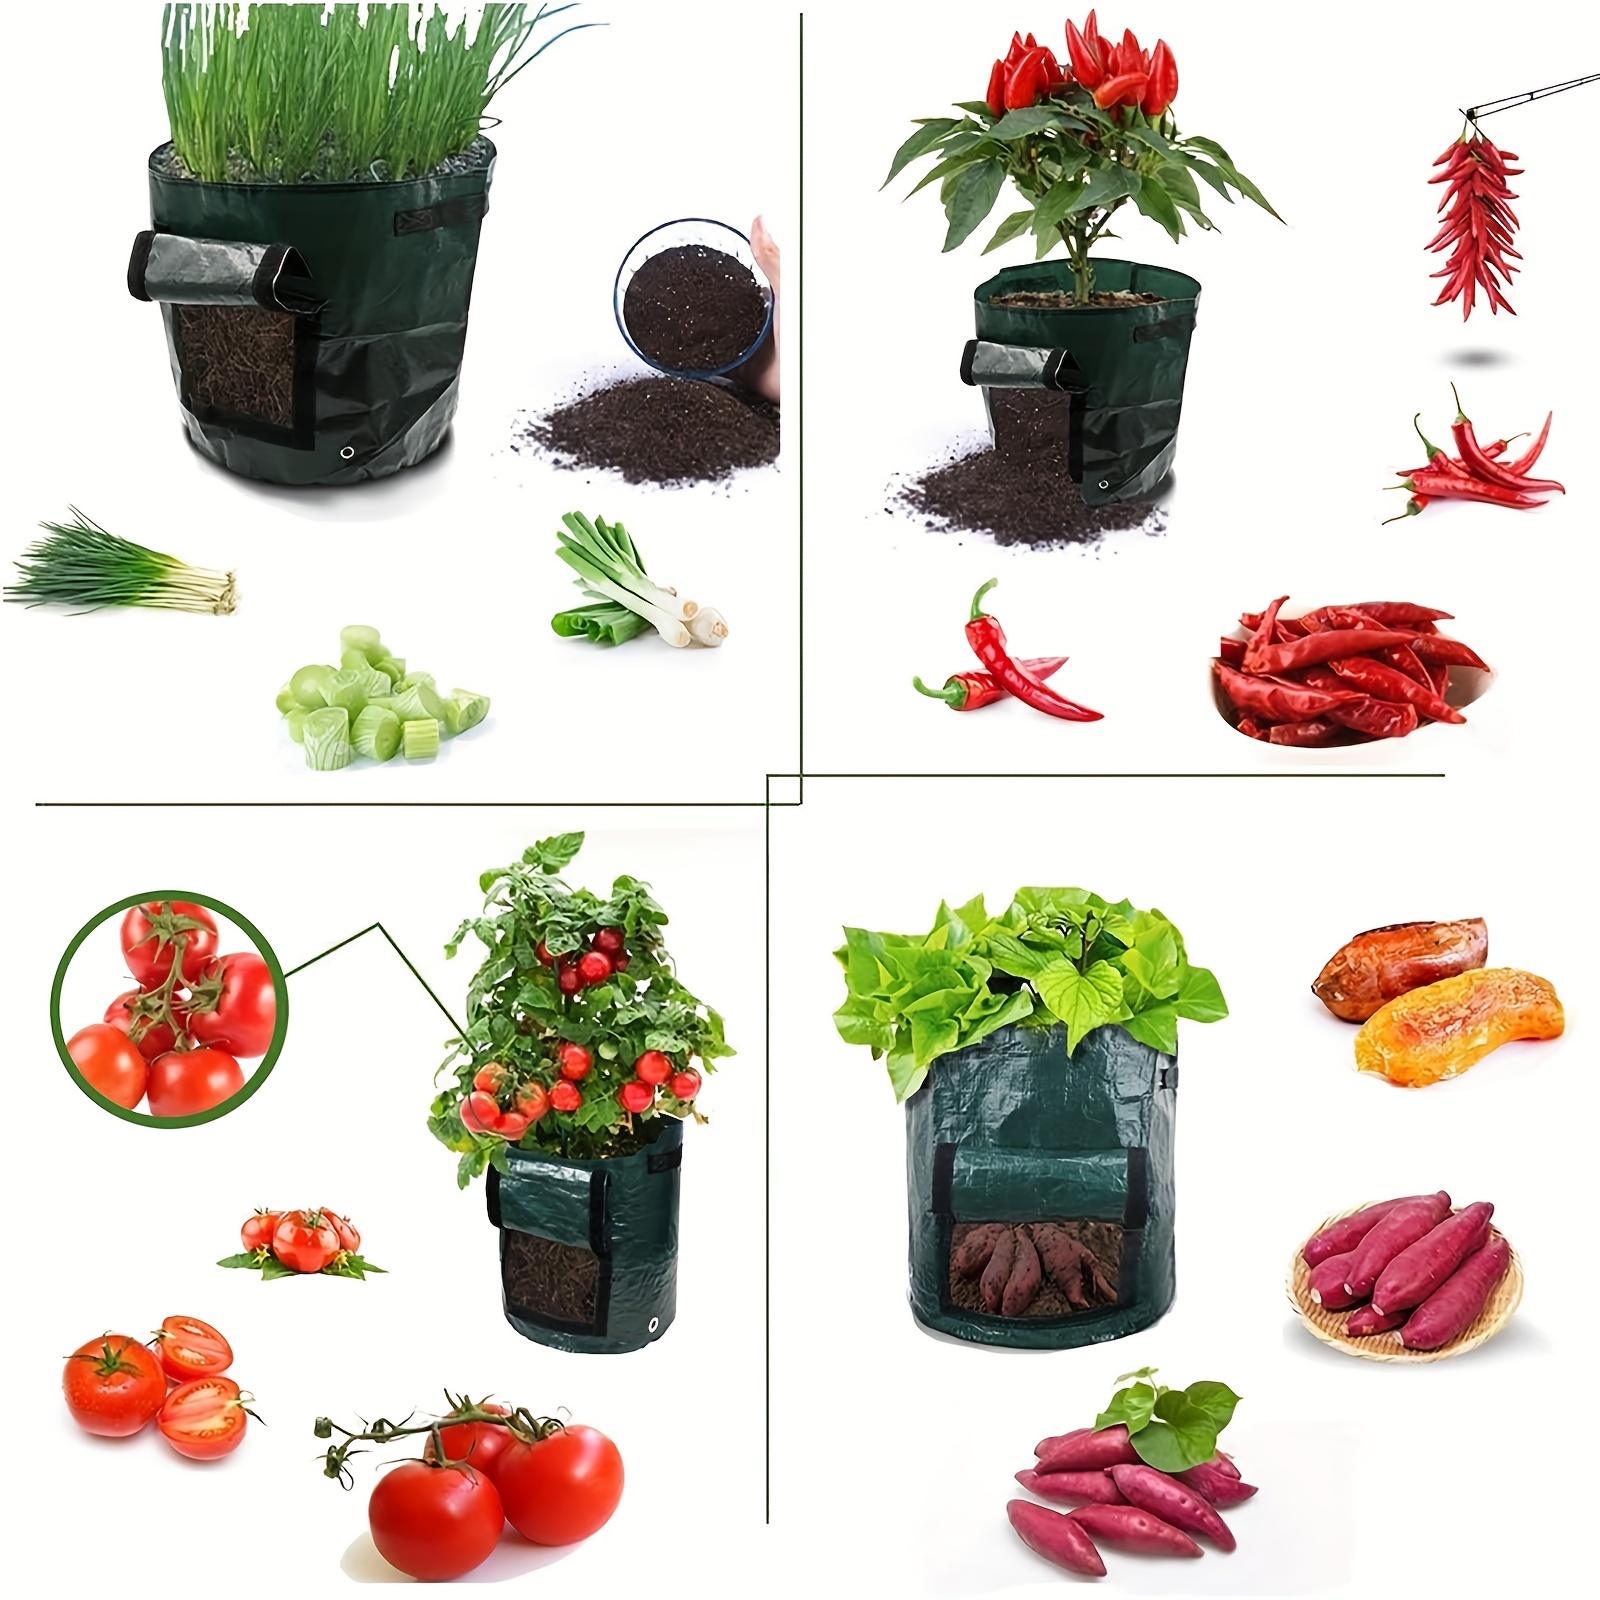 Potato-grow-bags, Garden Vegetable Planter With Handles&access